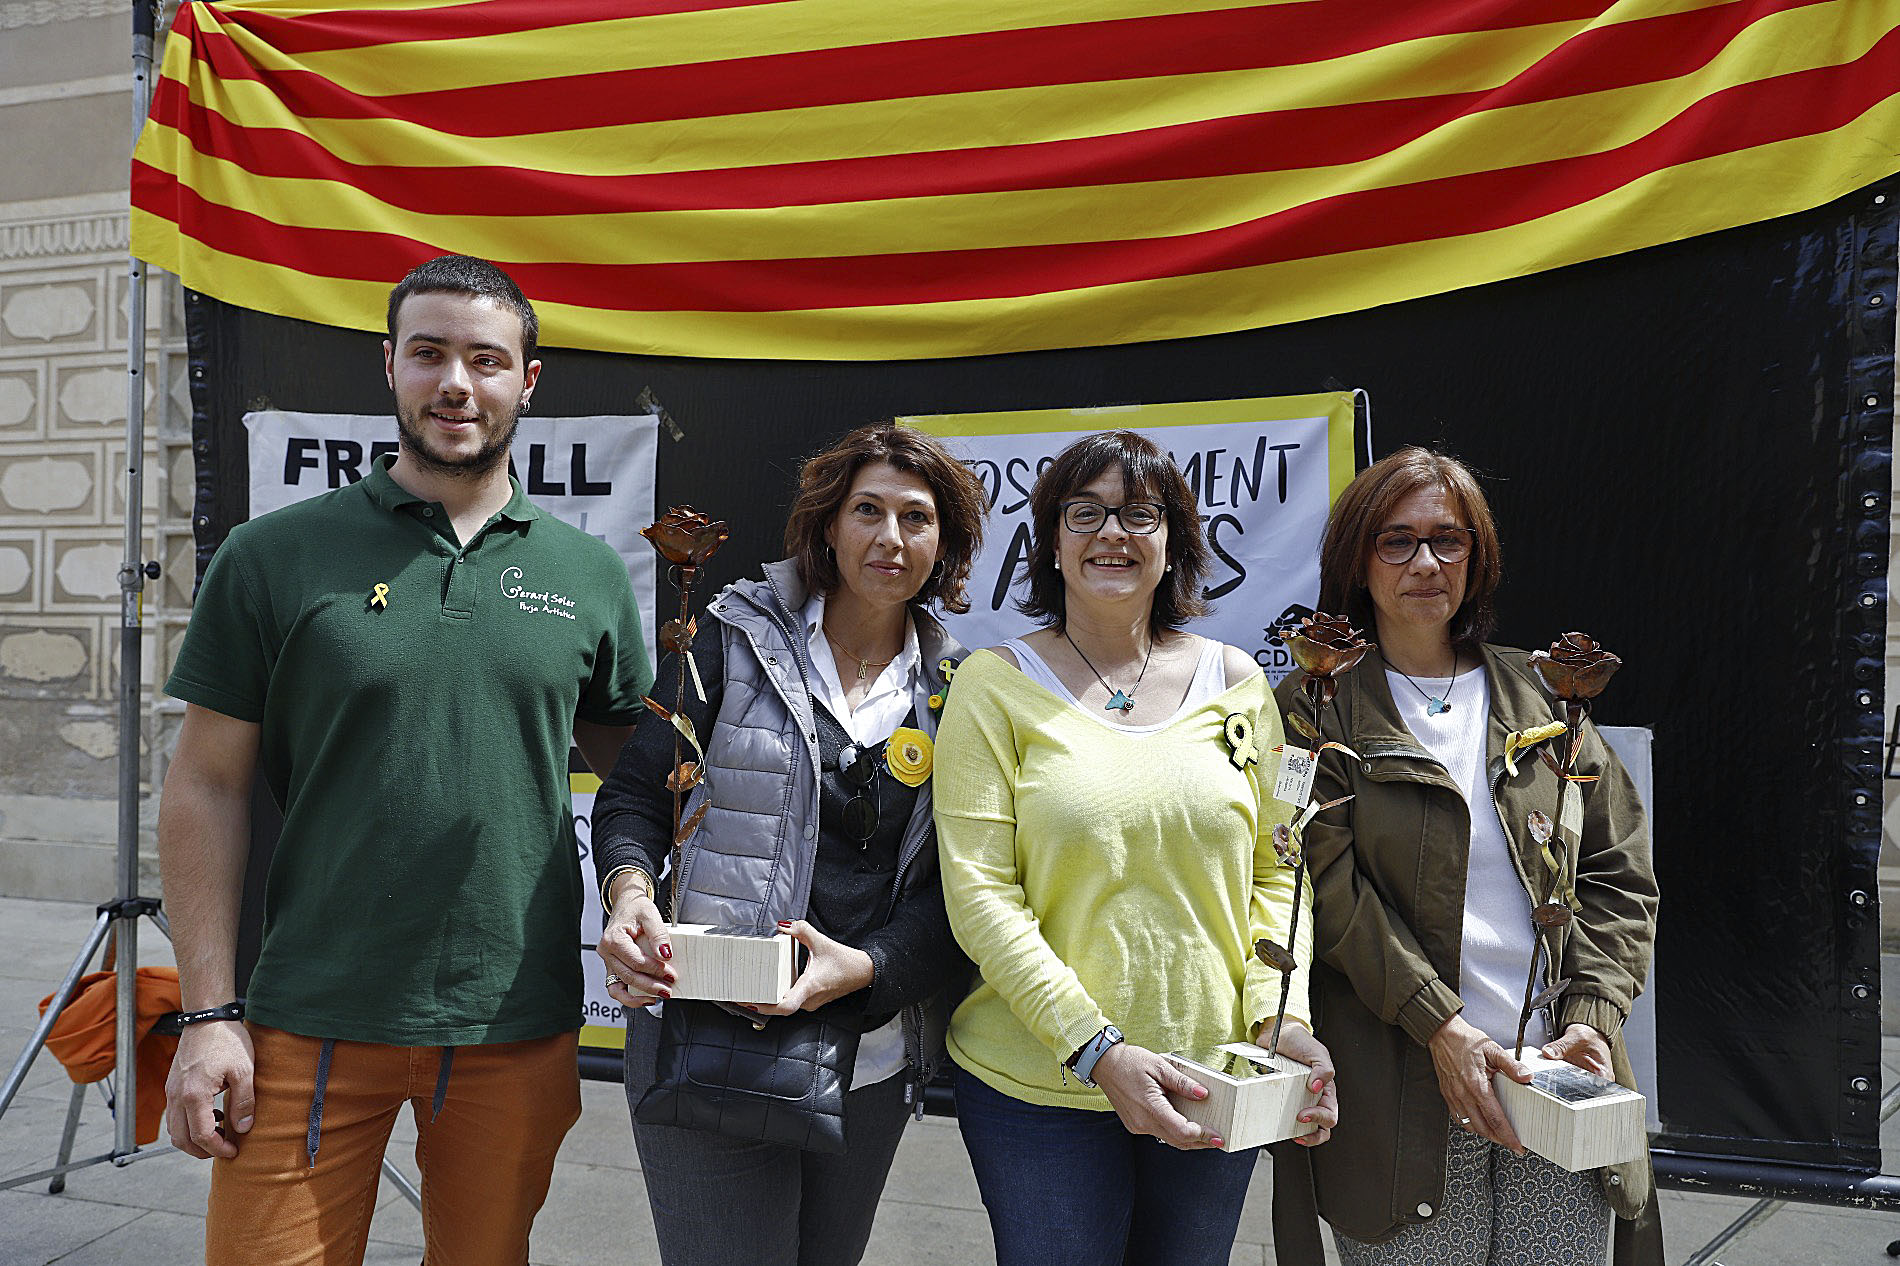 Va ser un acte a favor de la llibertat dels presos polítics i exiliats catalans